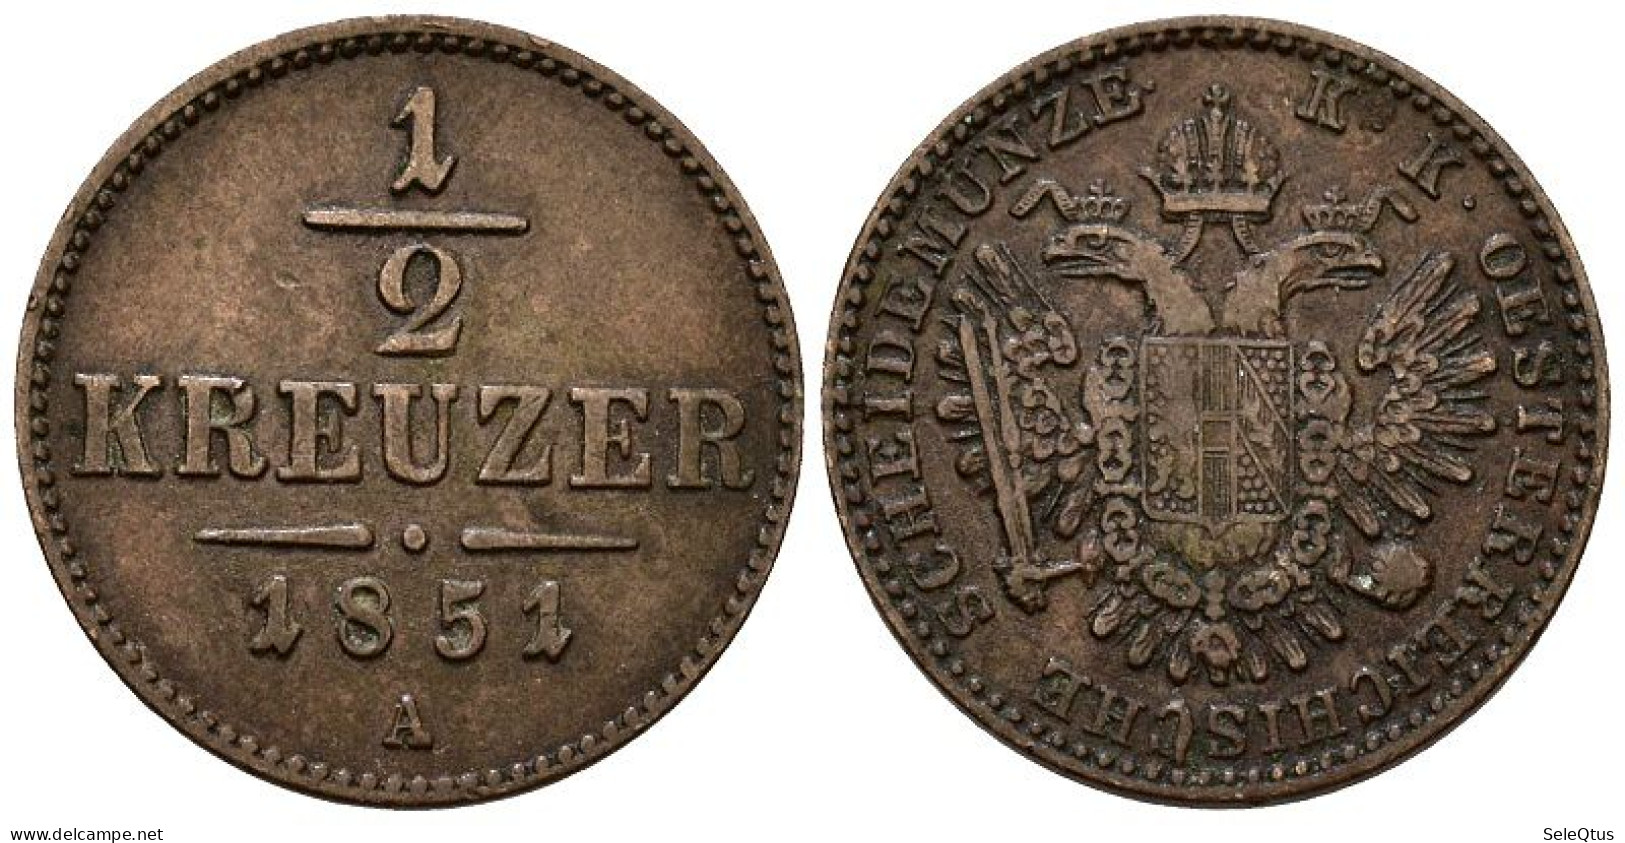 Monedas Antiguas - Ancient Coins (00123-007-1090) - Autriche